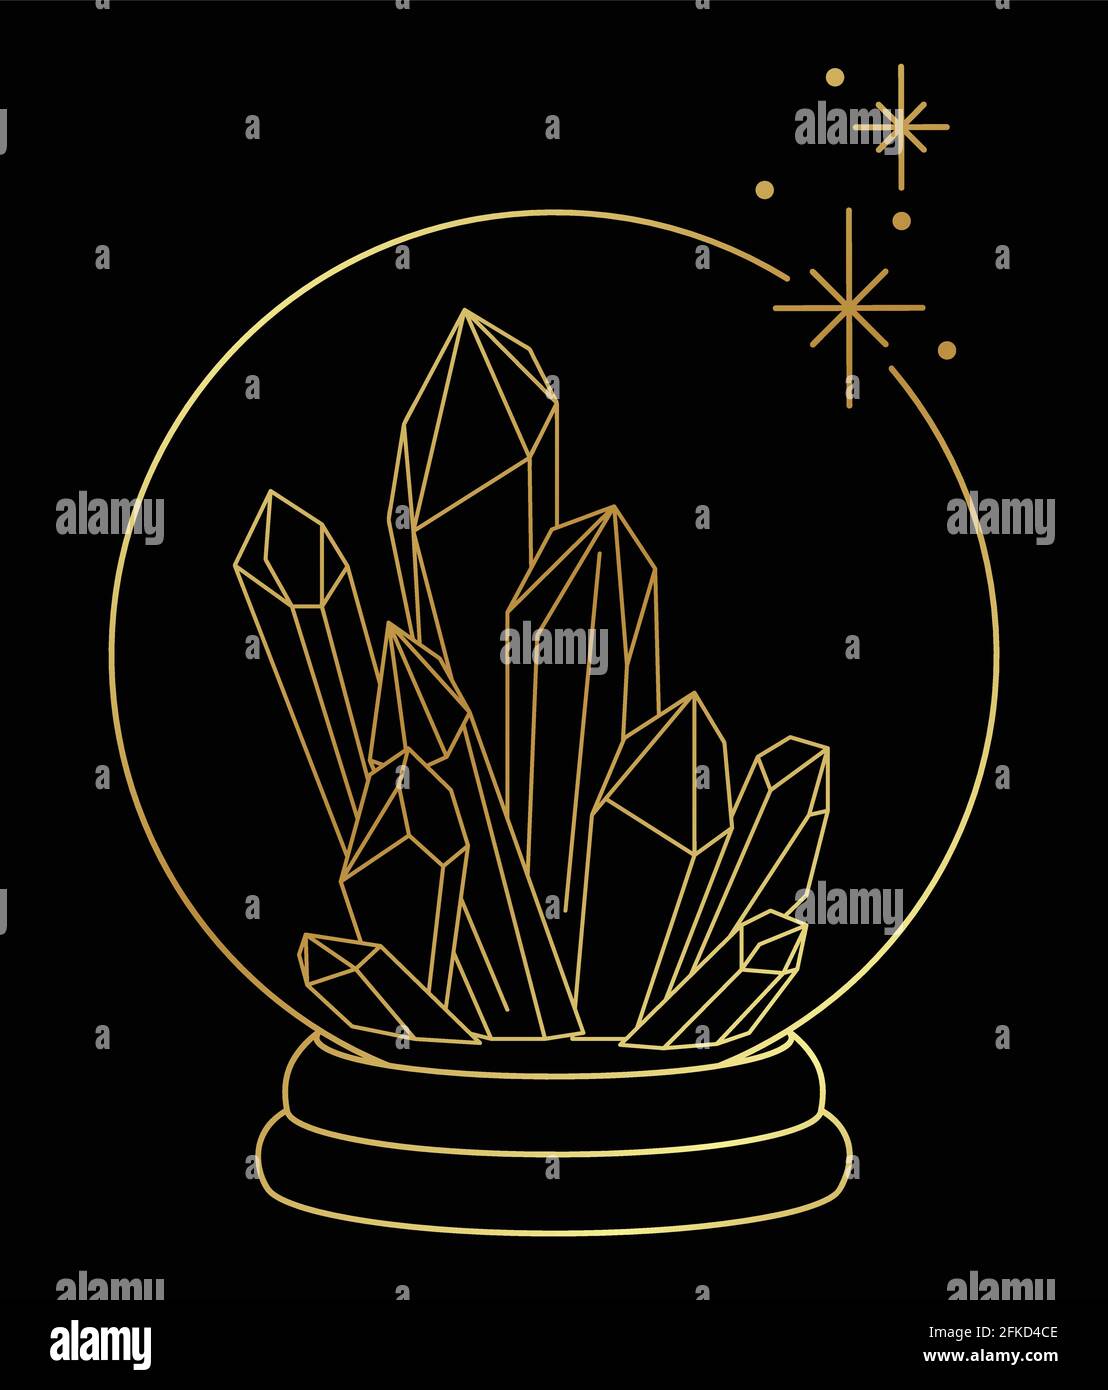 Linea d'arte di lusso d'oro di guarigione cristalli magici in un sfera di cristallo Illustrazione Vettoriale